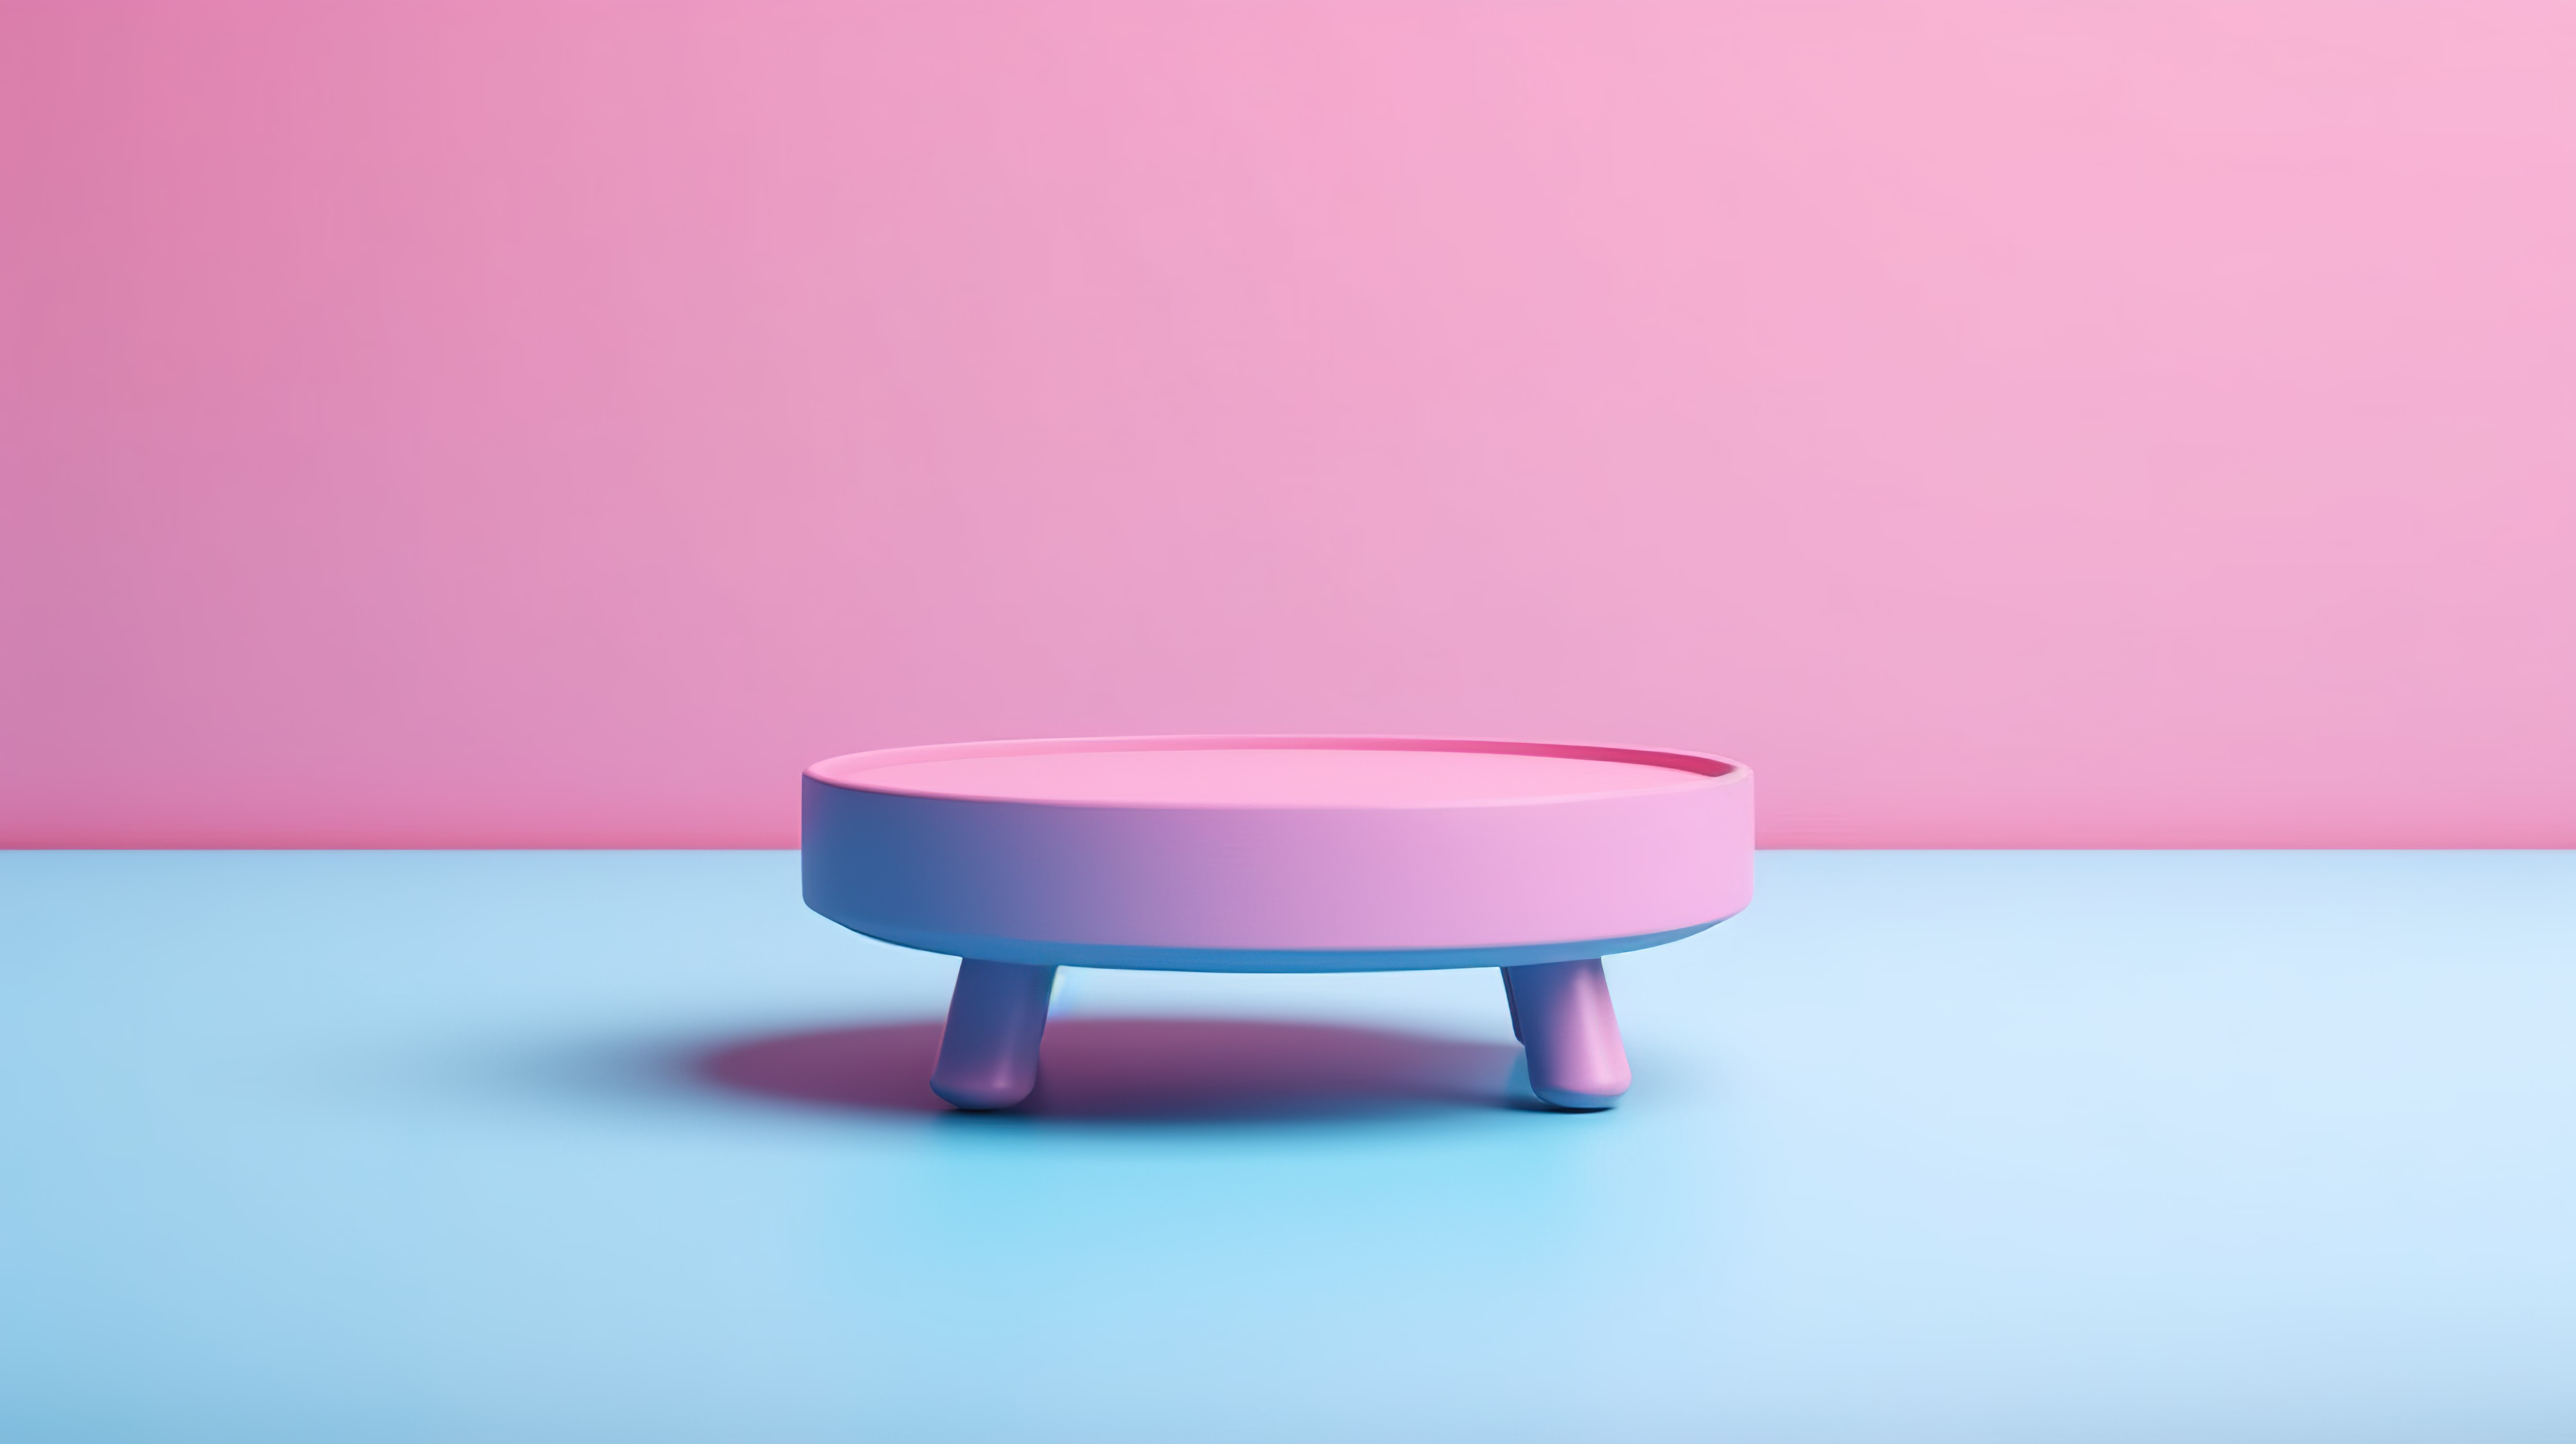 粉色背景增强了 3D 双色调蓝色现代塑料圆桌模型的引人注目的吸引力图片